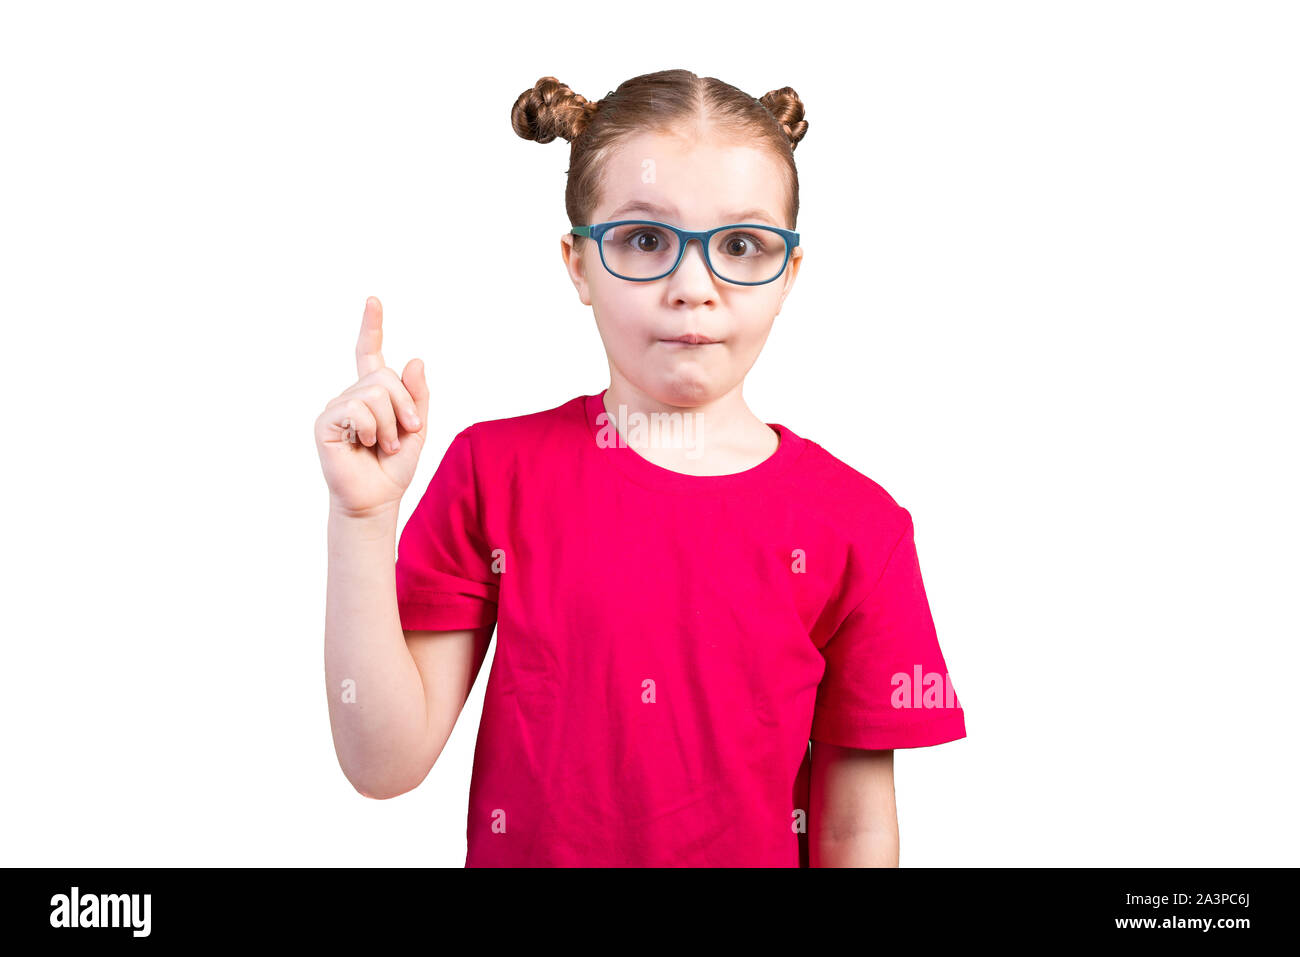 Ein kleines Mädchen mit Brille, hatte eine Idee. Auf einem weißen Hintergrund. Stockfoto